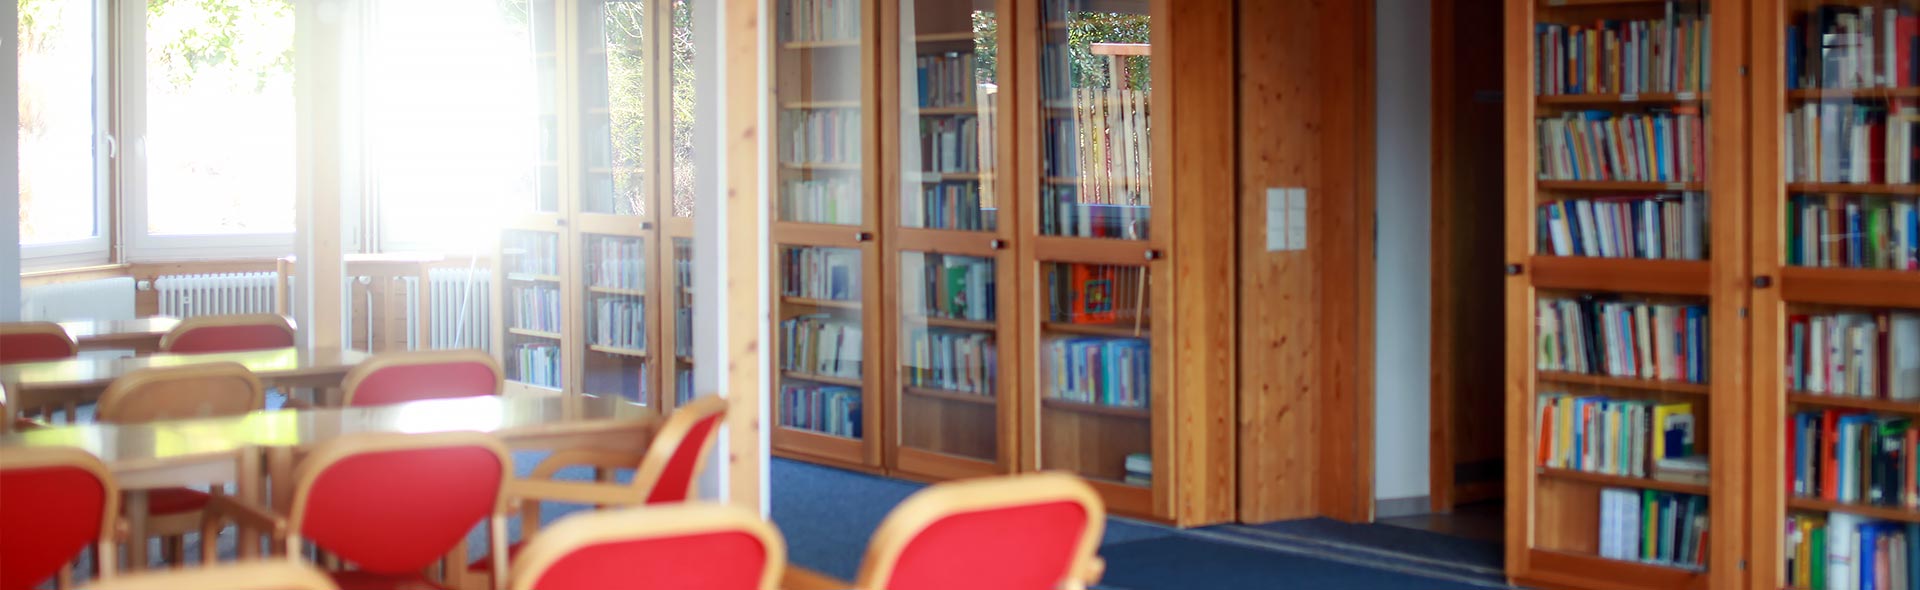 OJC Begegnen – Seminarraum mit Bücherregalen aus hellem Holz, Glastüren zum Schutz der Bücher und Roter Bestuhlung.